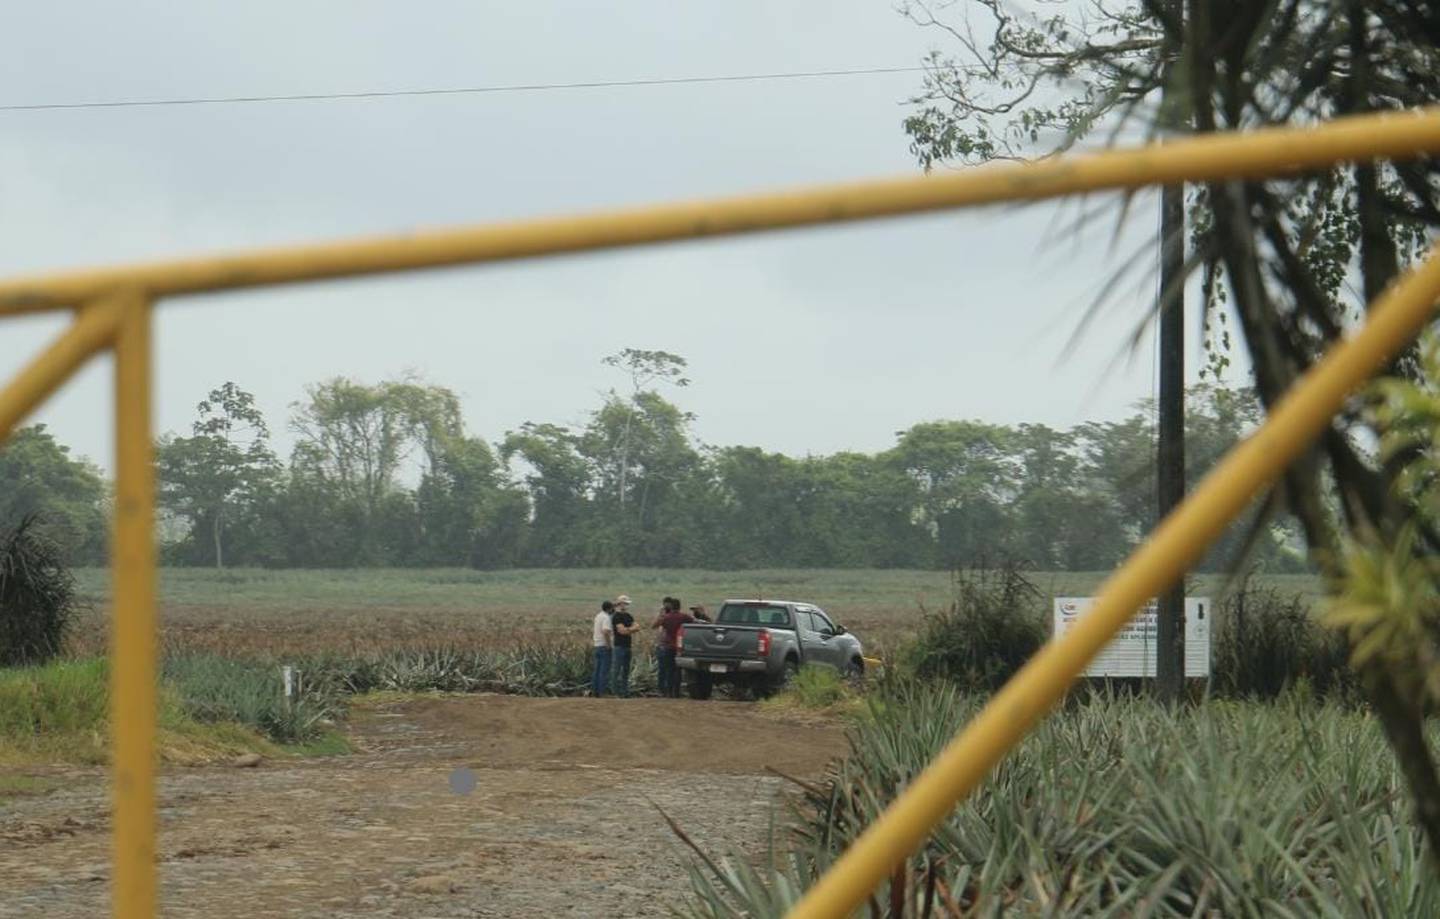 El cuerpo de un hombre fue encontrado dentro de una piñera en Guácimo de Limón horas después de que unos guardas se enfrentaron a balazos con unos asaltantes. Foto Reyner Montero.